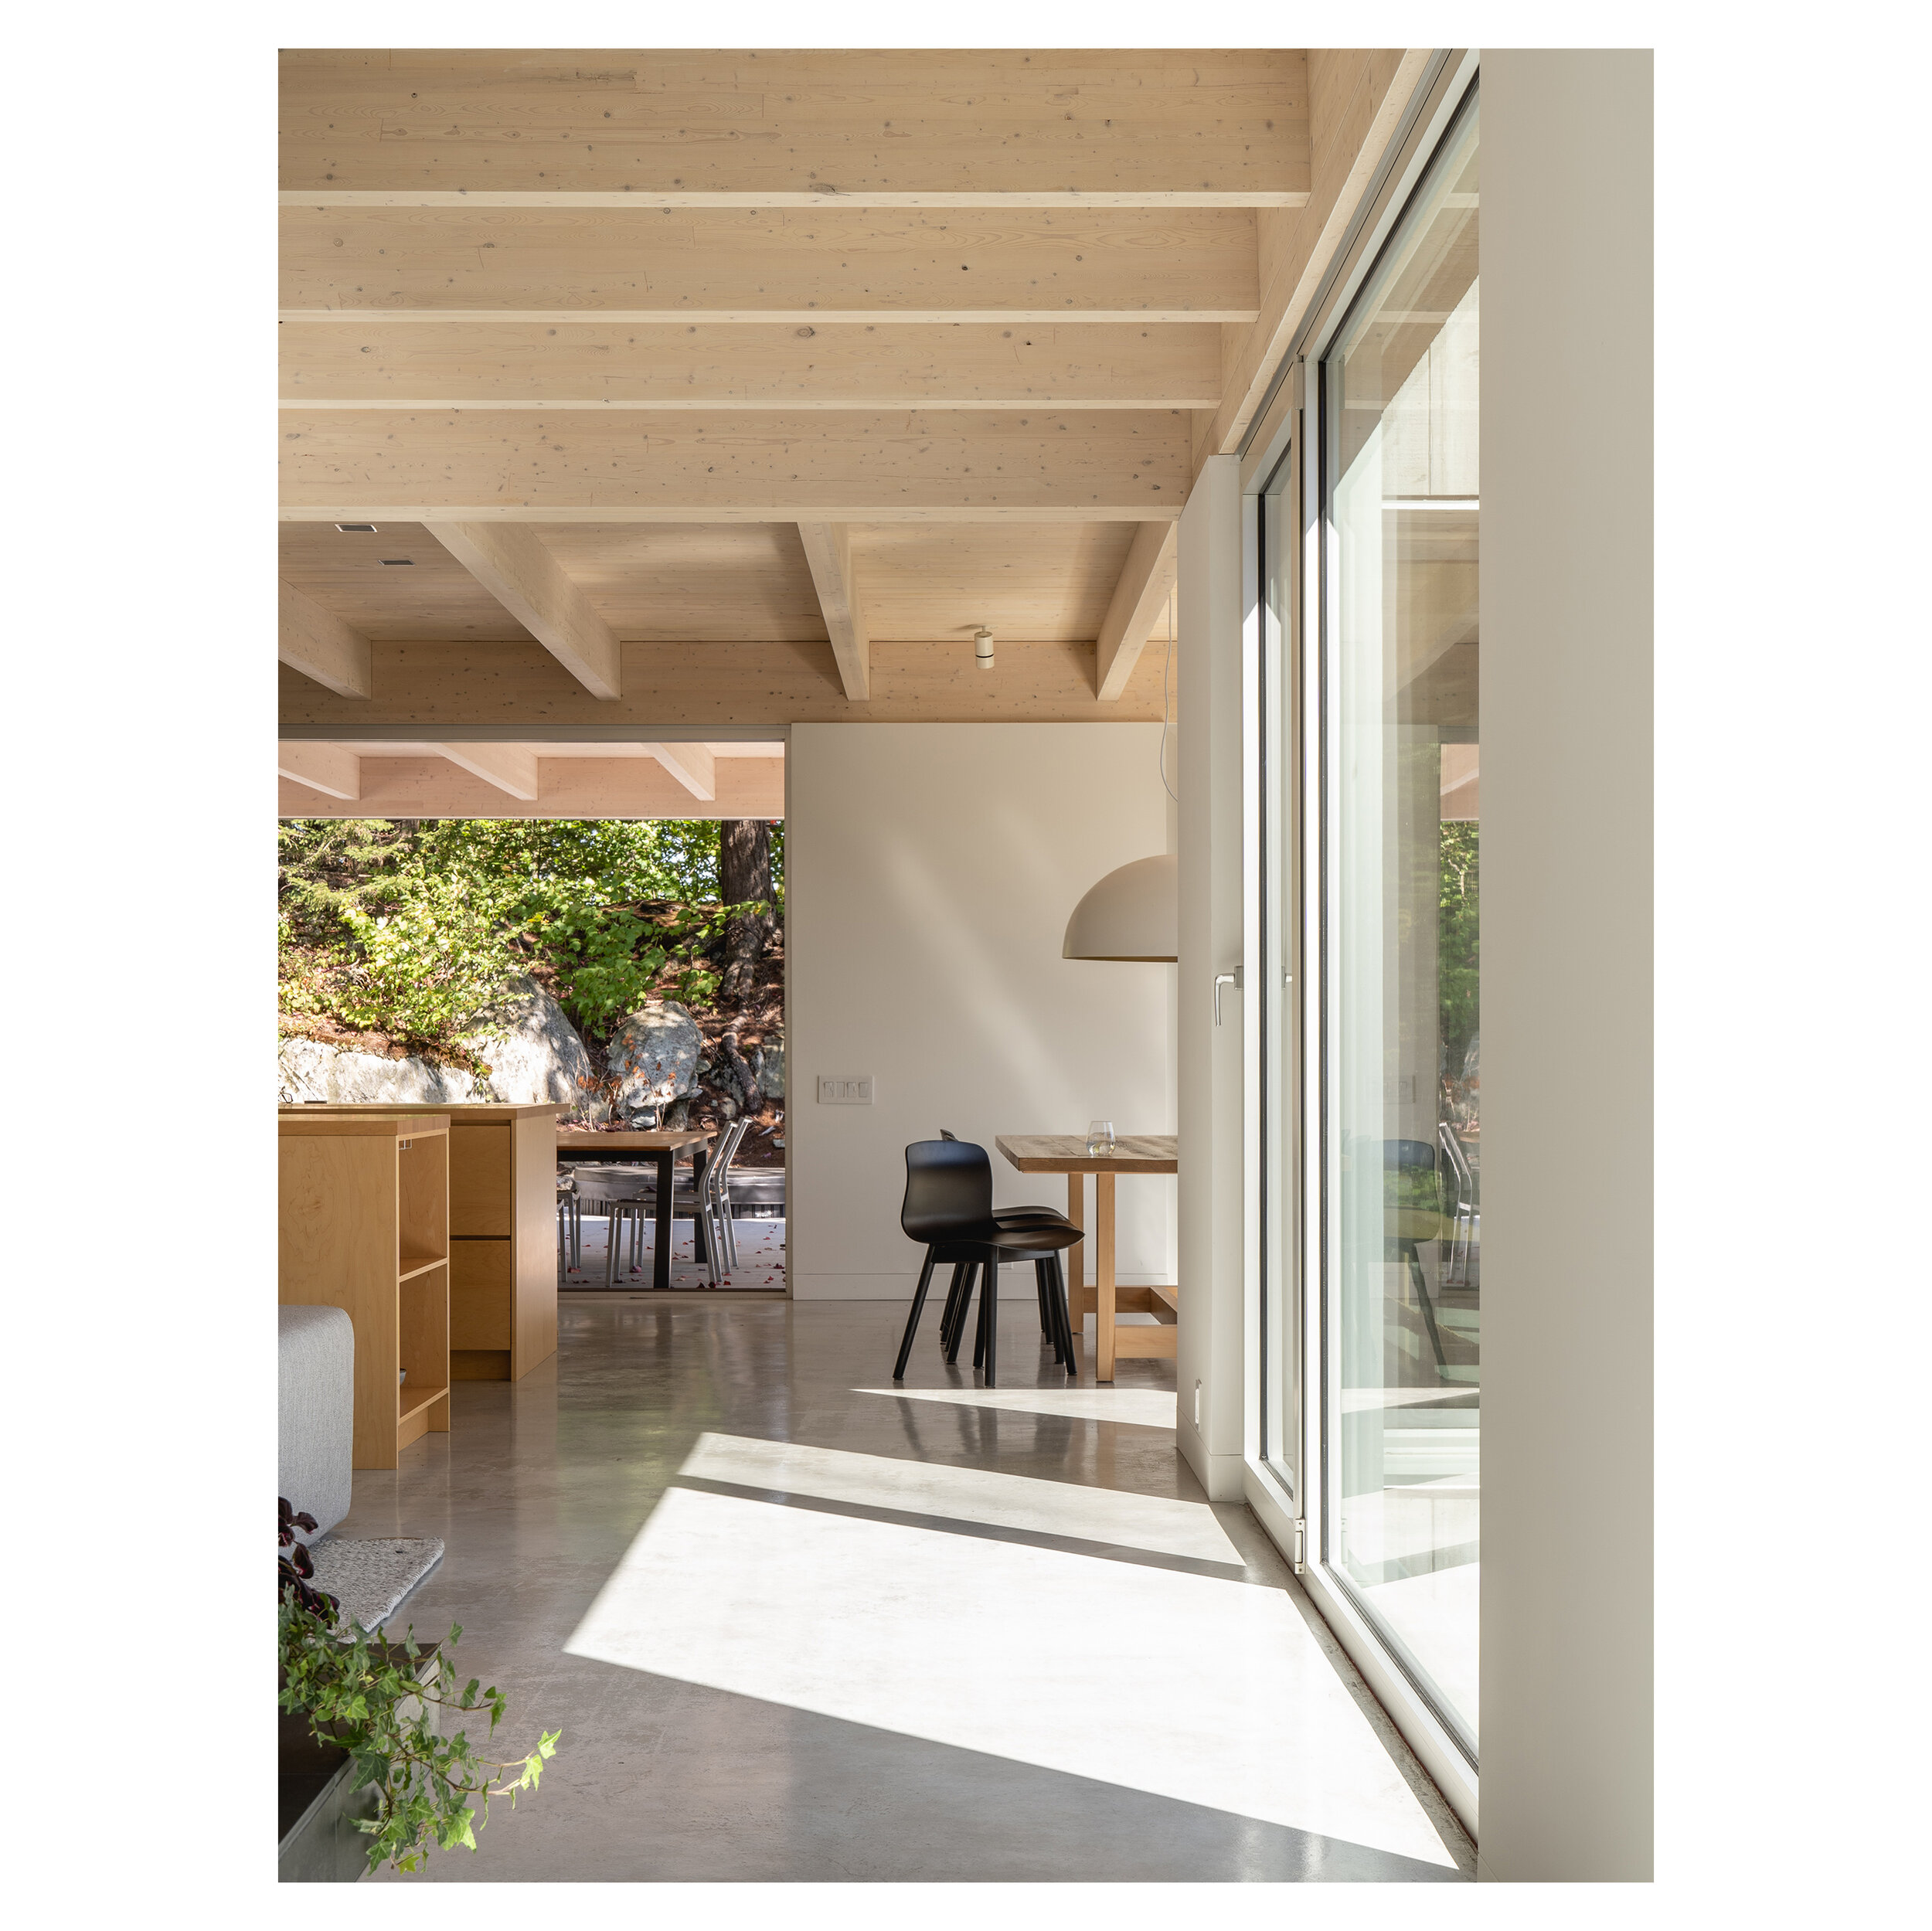   &lt;&lt;&lt;&lt;&lt; BACK     Maison Forêt I / Natalie Dionne Architecture    © Raphaël Thibodeau 